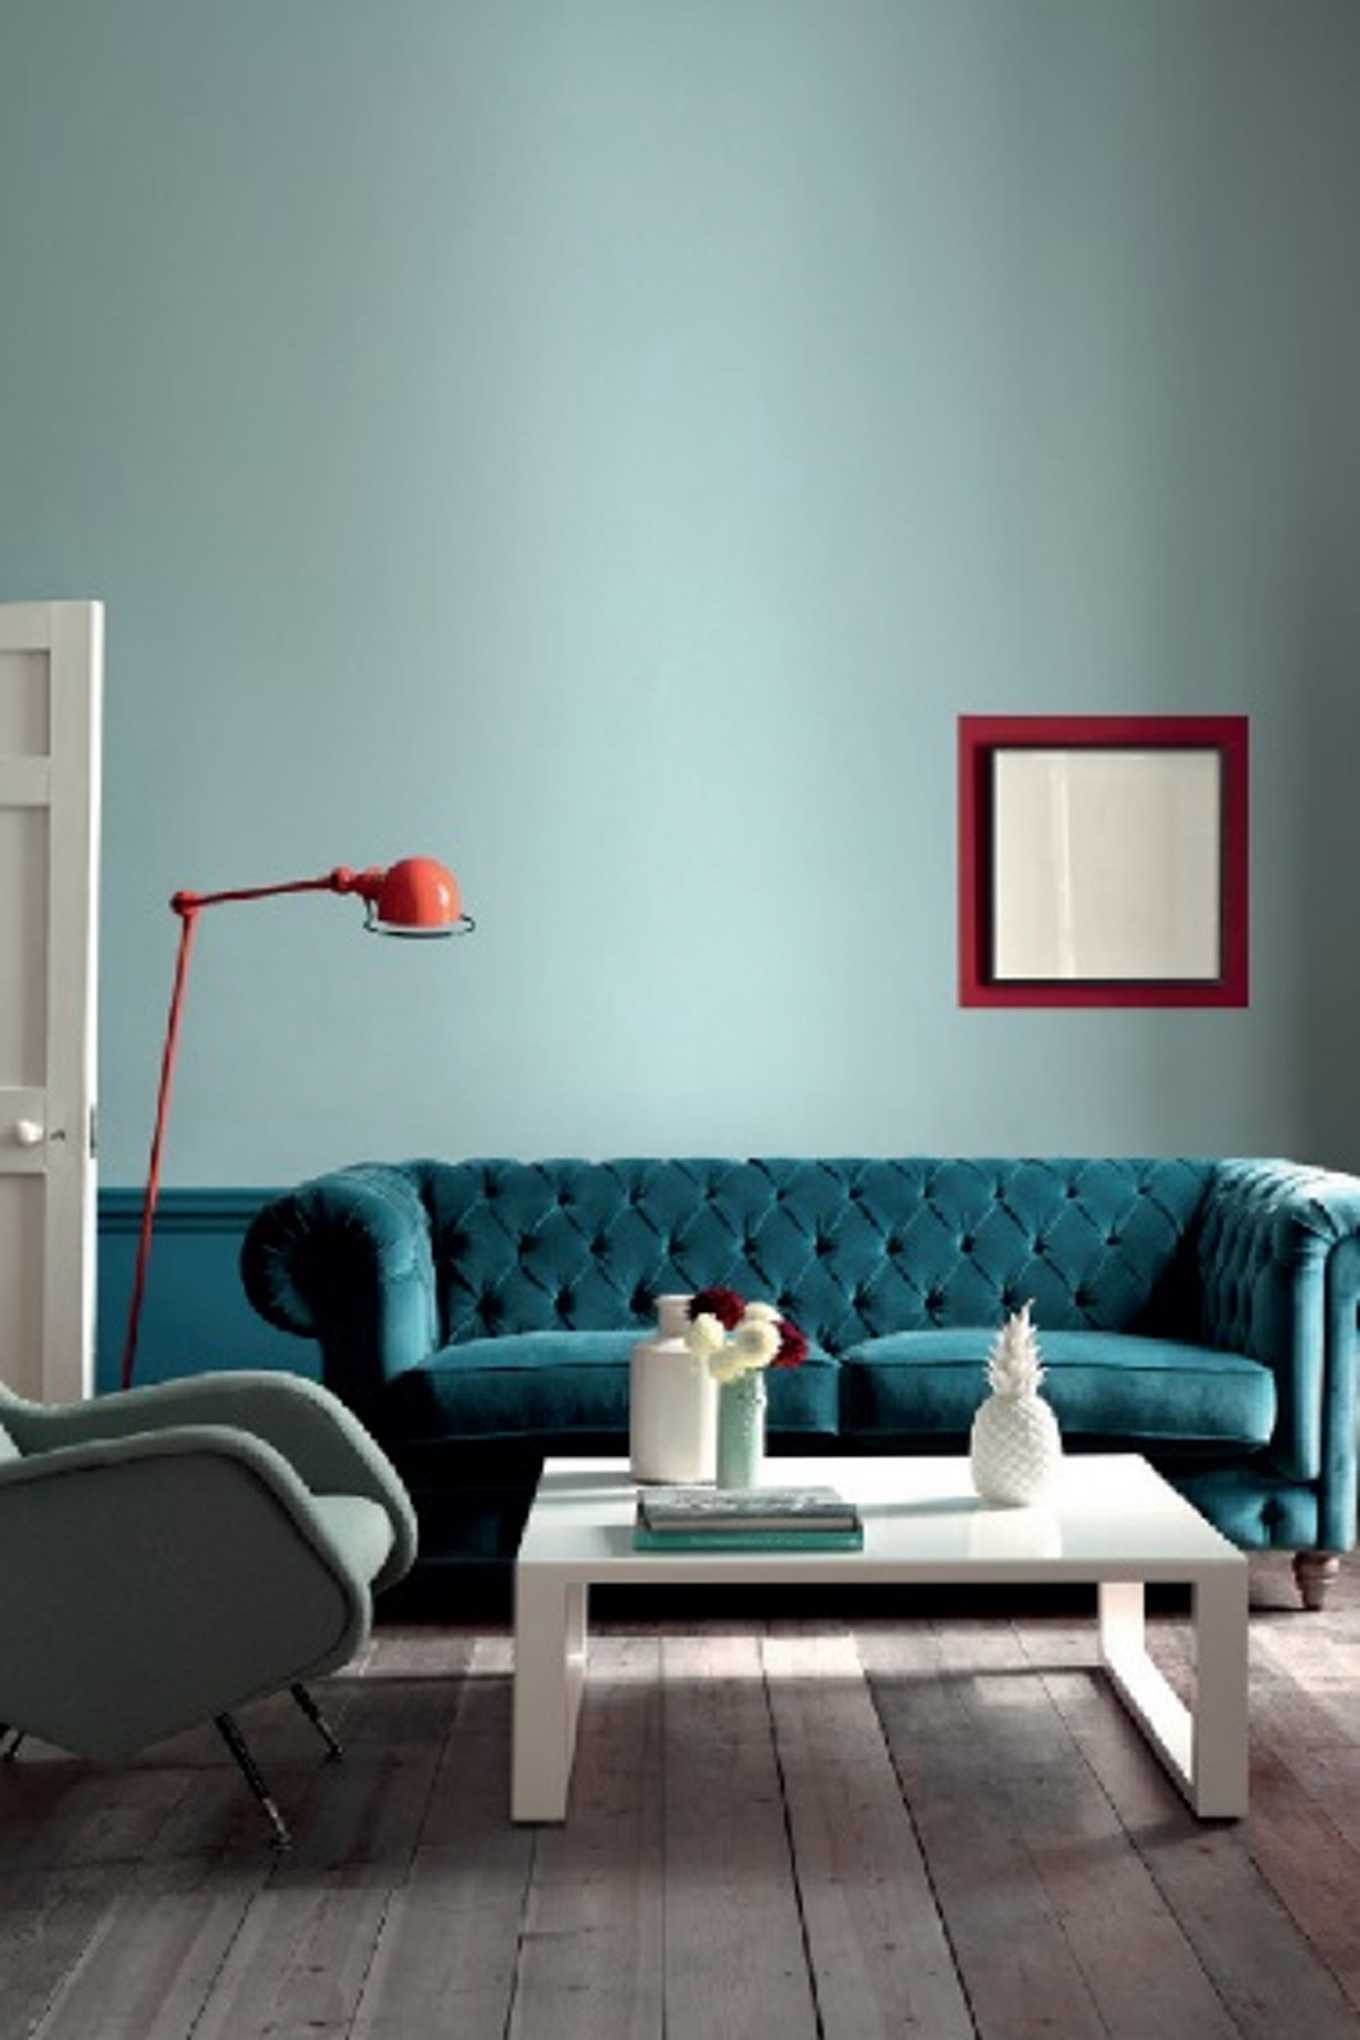 couleur mur salon couleur mur tendance salon chambre adulte 2018 avec impressionnant couleur mur salon galerie avec couleur mur salon tendance chambre adulte la peinture pour salon une peinture bleu c